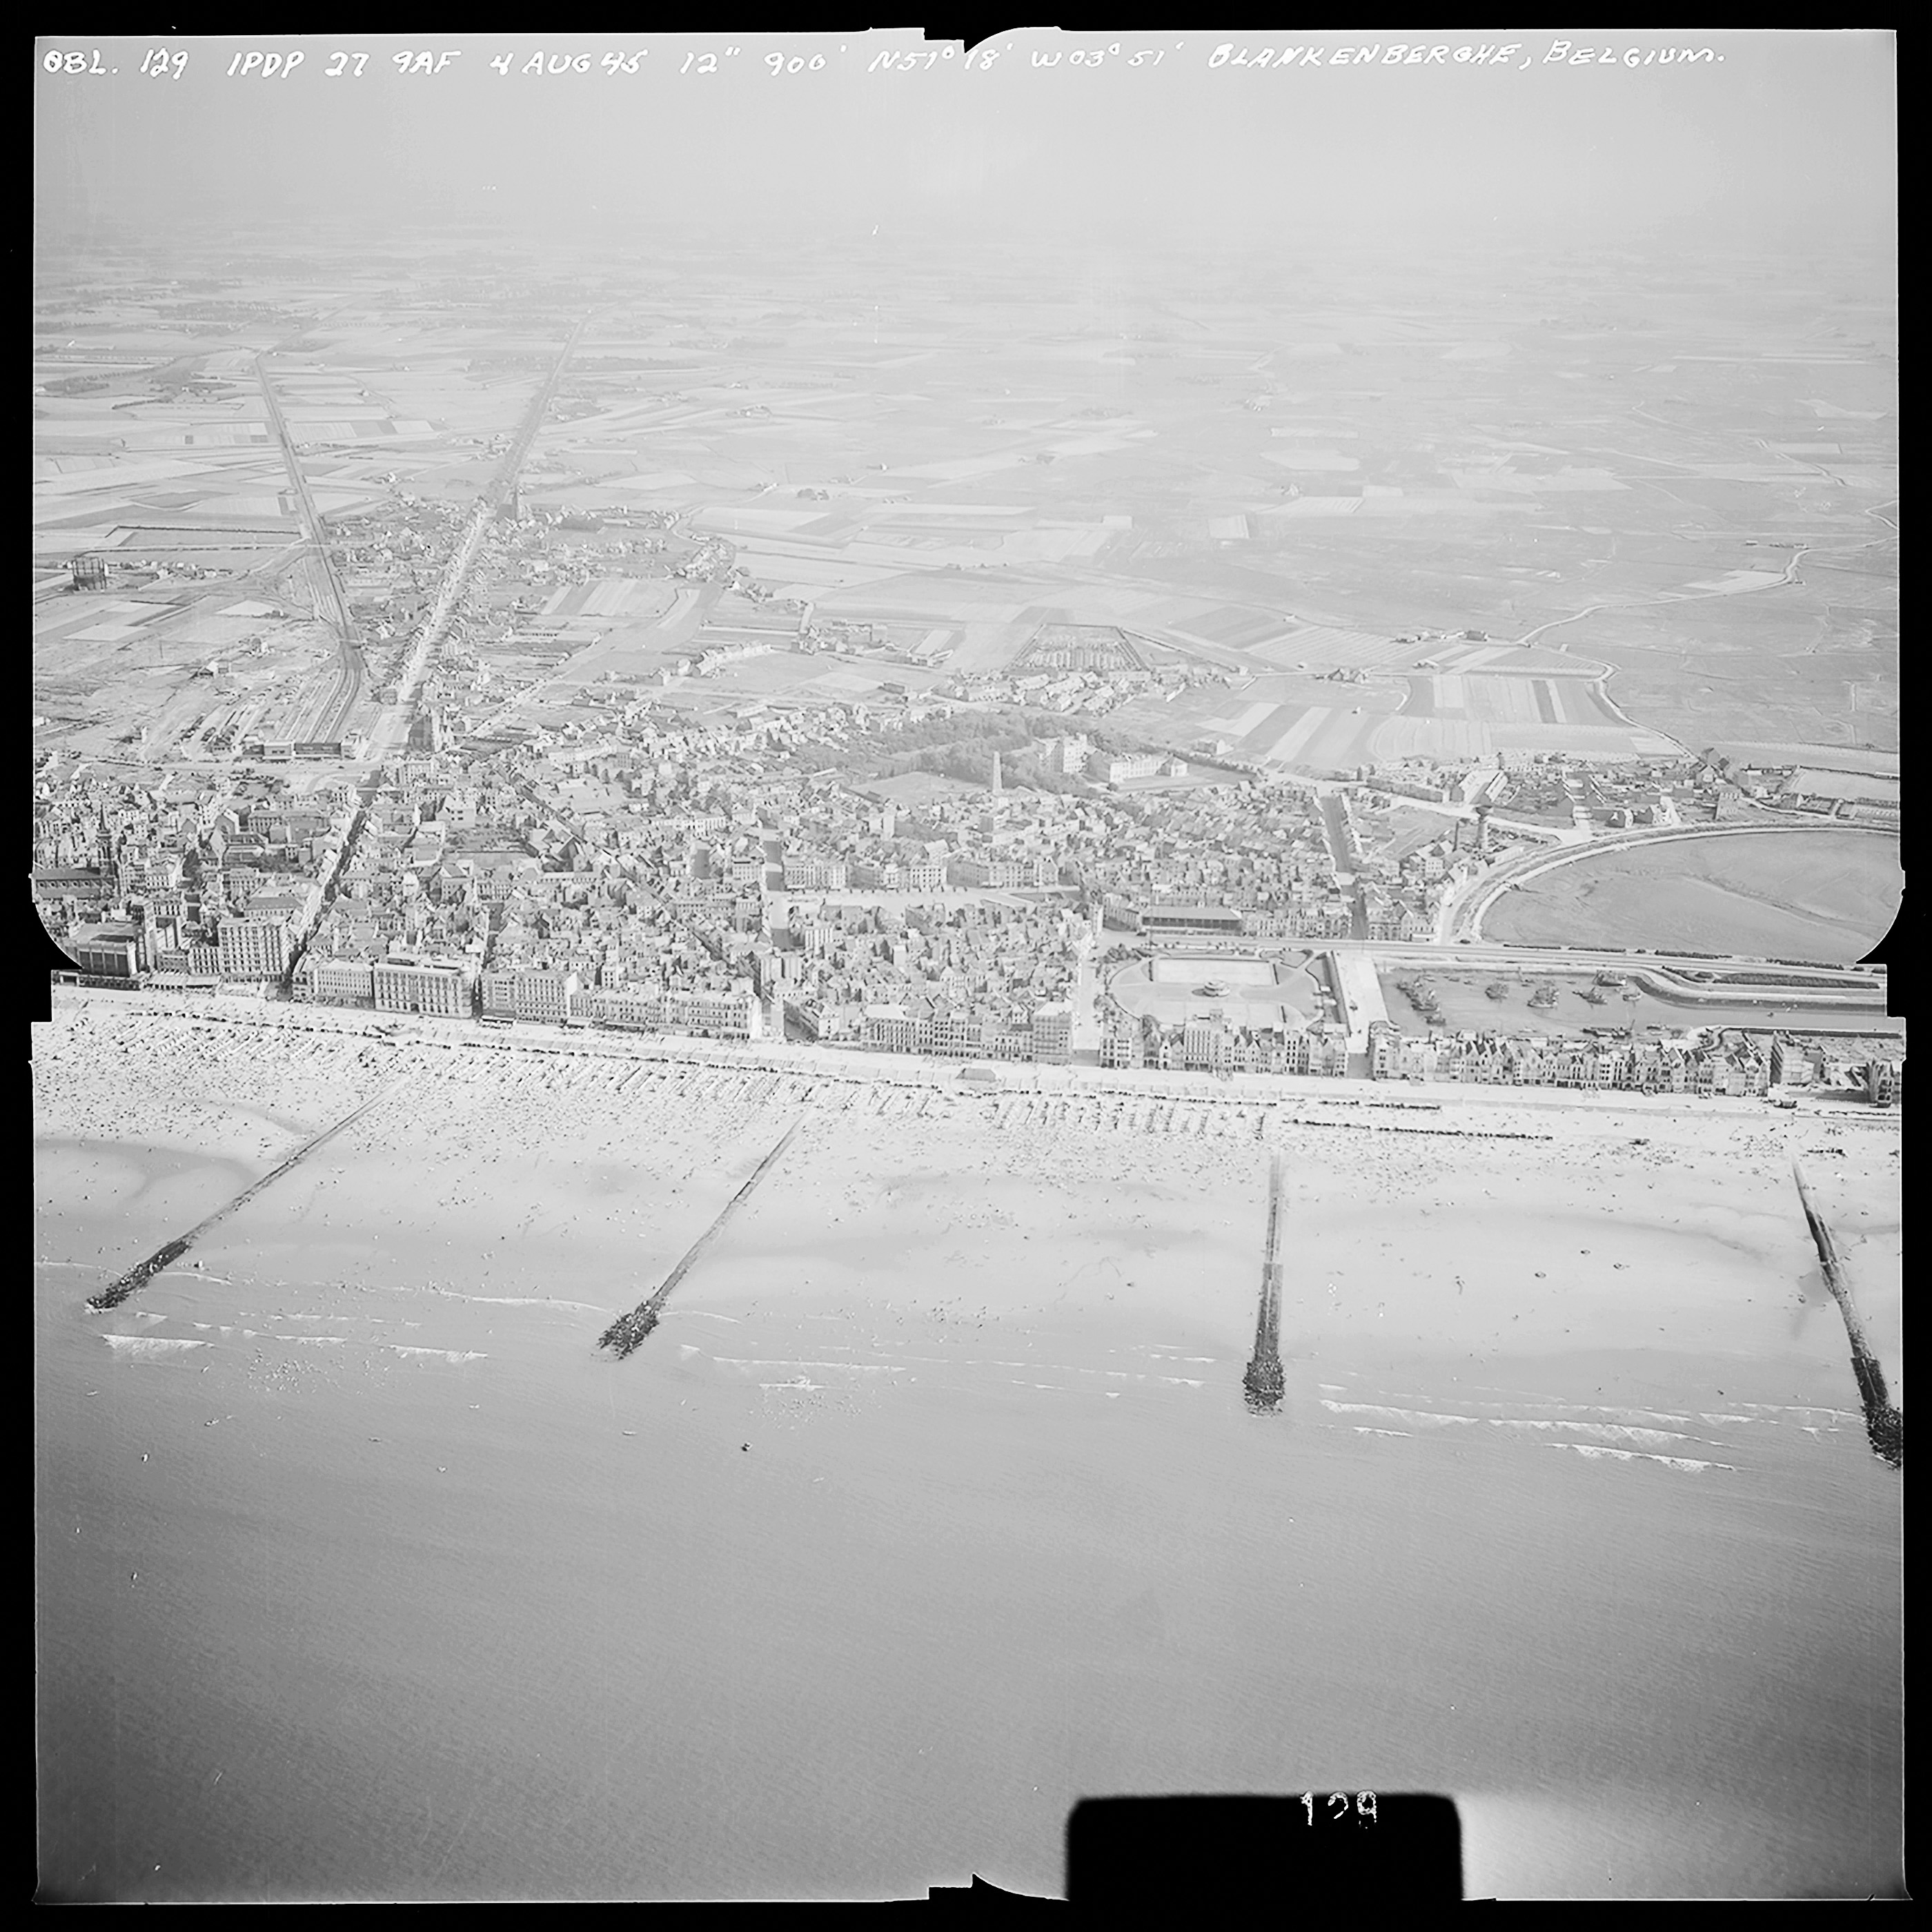 Le Mur de l'Atlantique - Seconde Guerre Mondiale - Pays-Bas Belgique France 1945 - photographies historiques - vues aériennes historiques